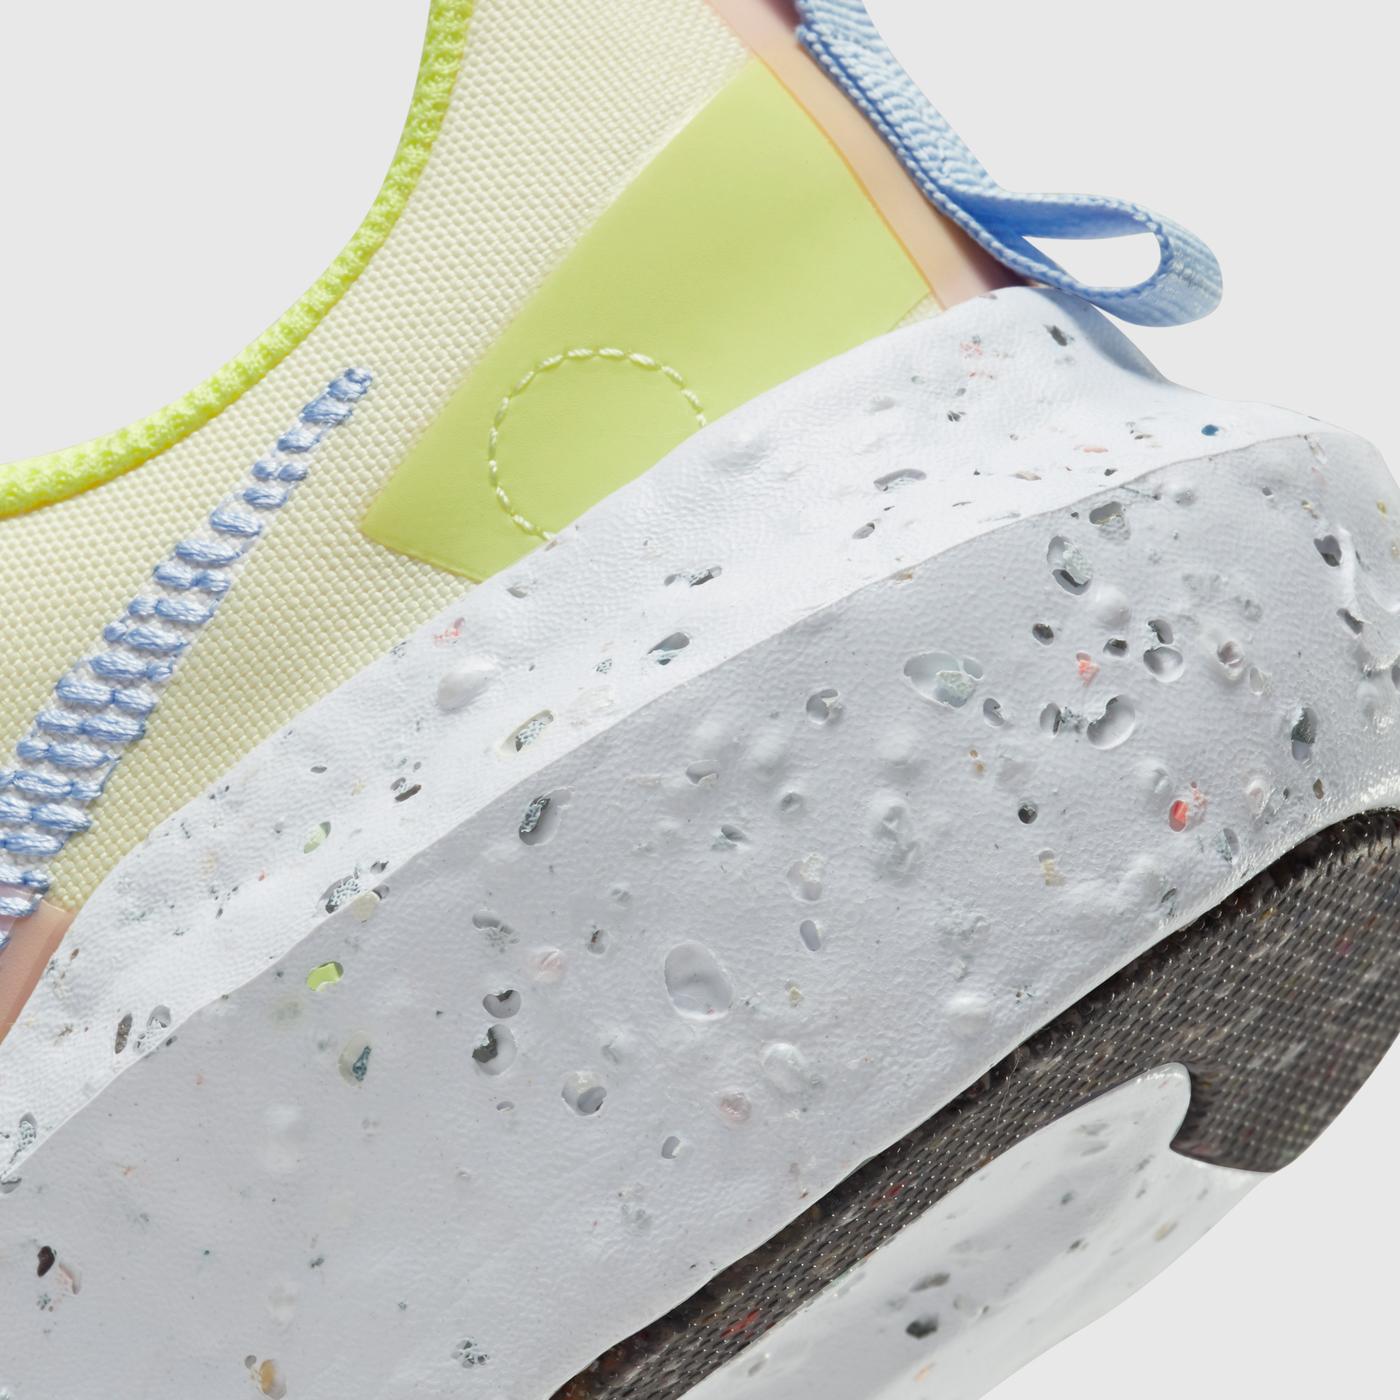 Nike Crater Impact Kadın Sarı Spor Ayakkabı